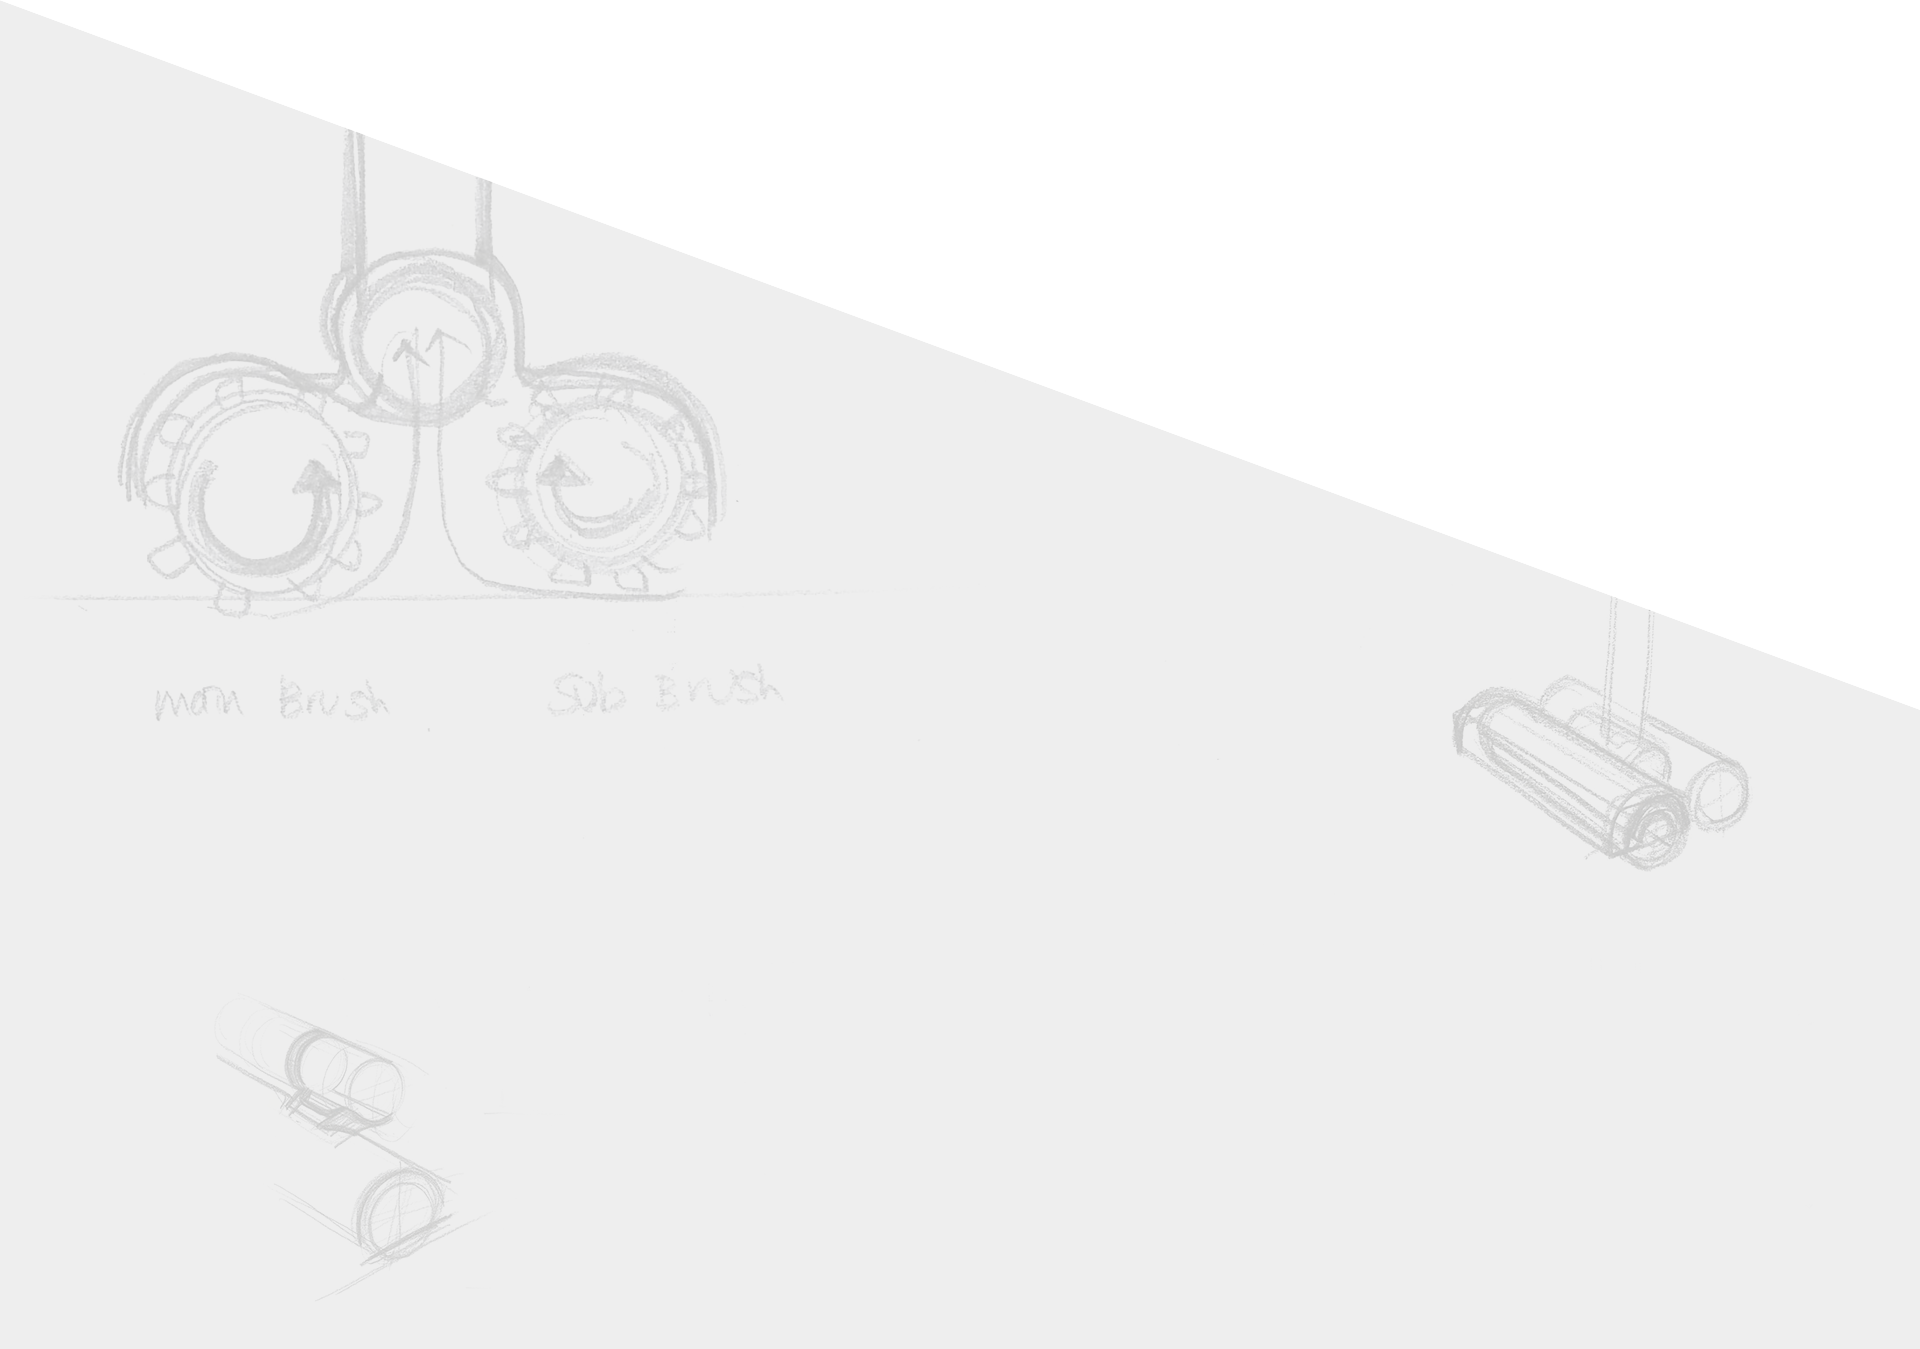 삼성전자 POWERGun 청소기의 스케치 이미지 입니다.